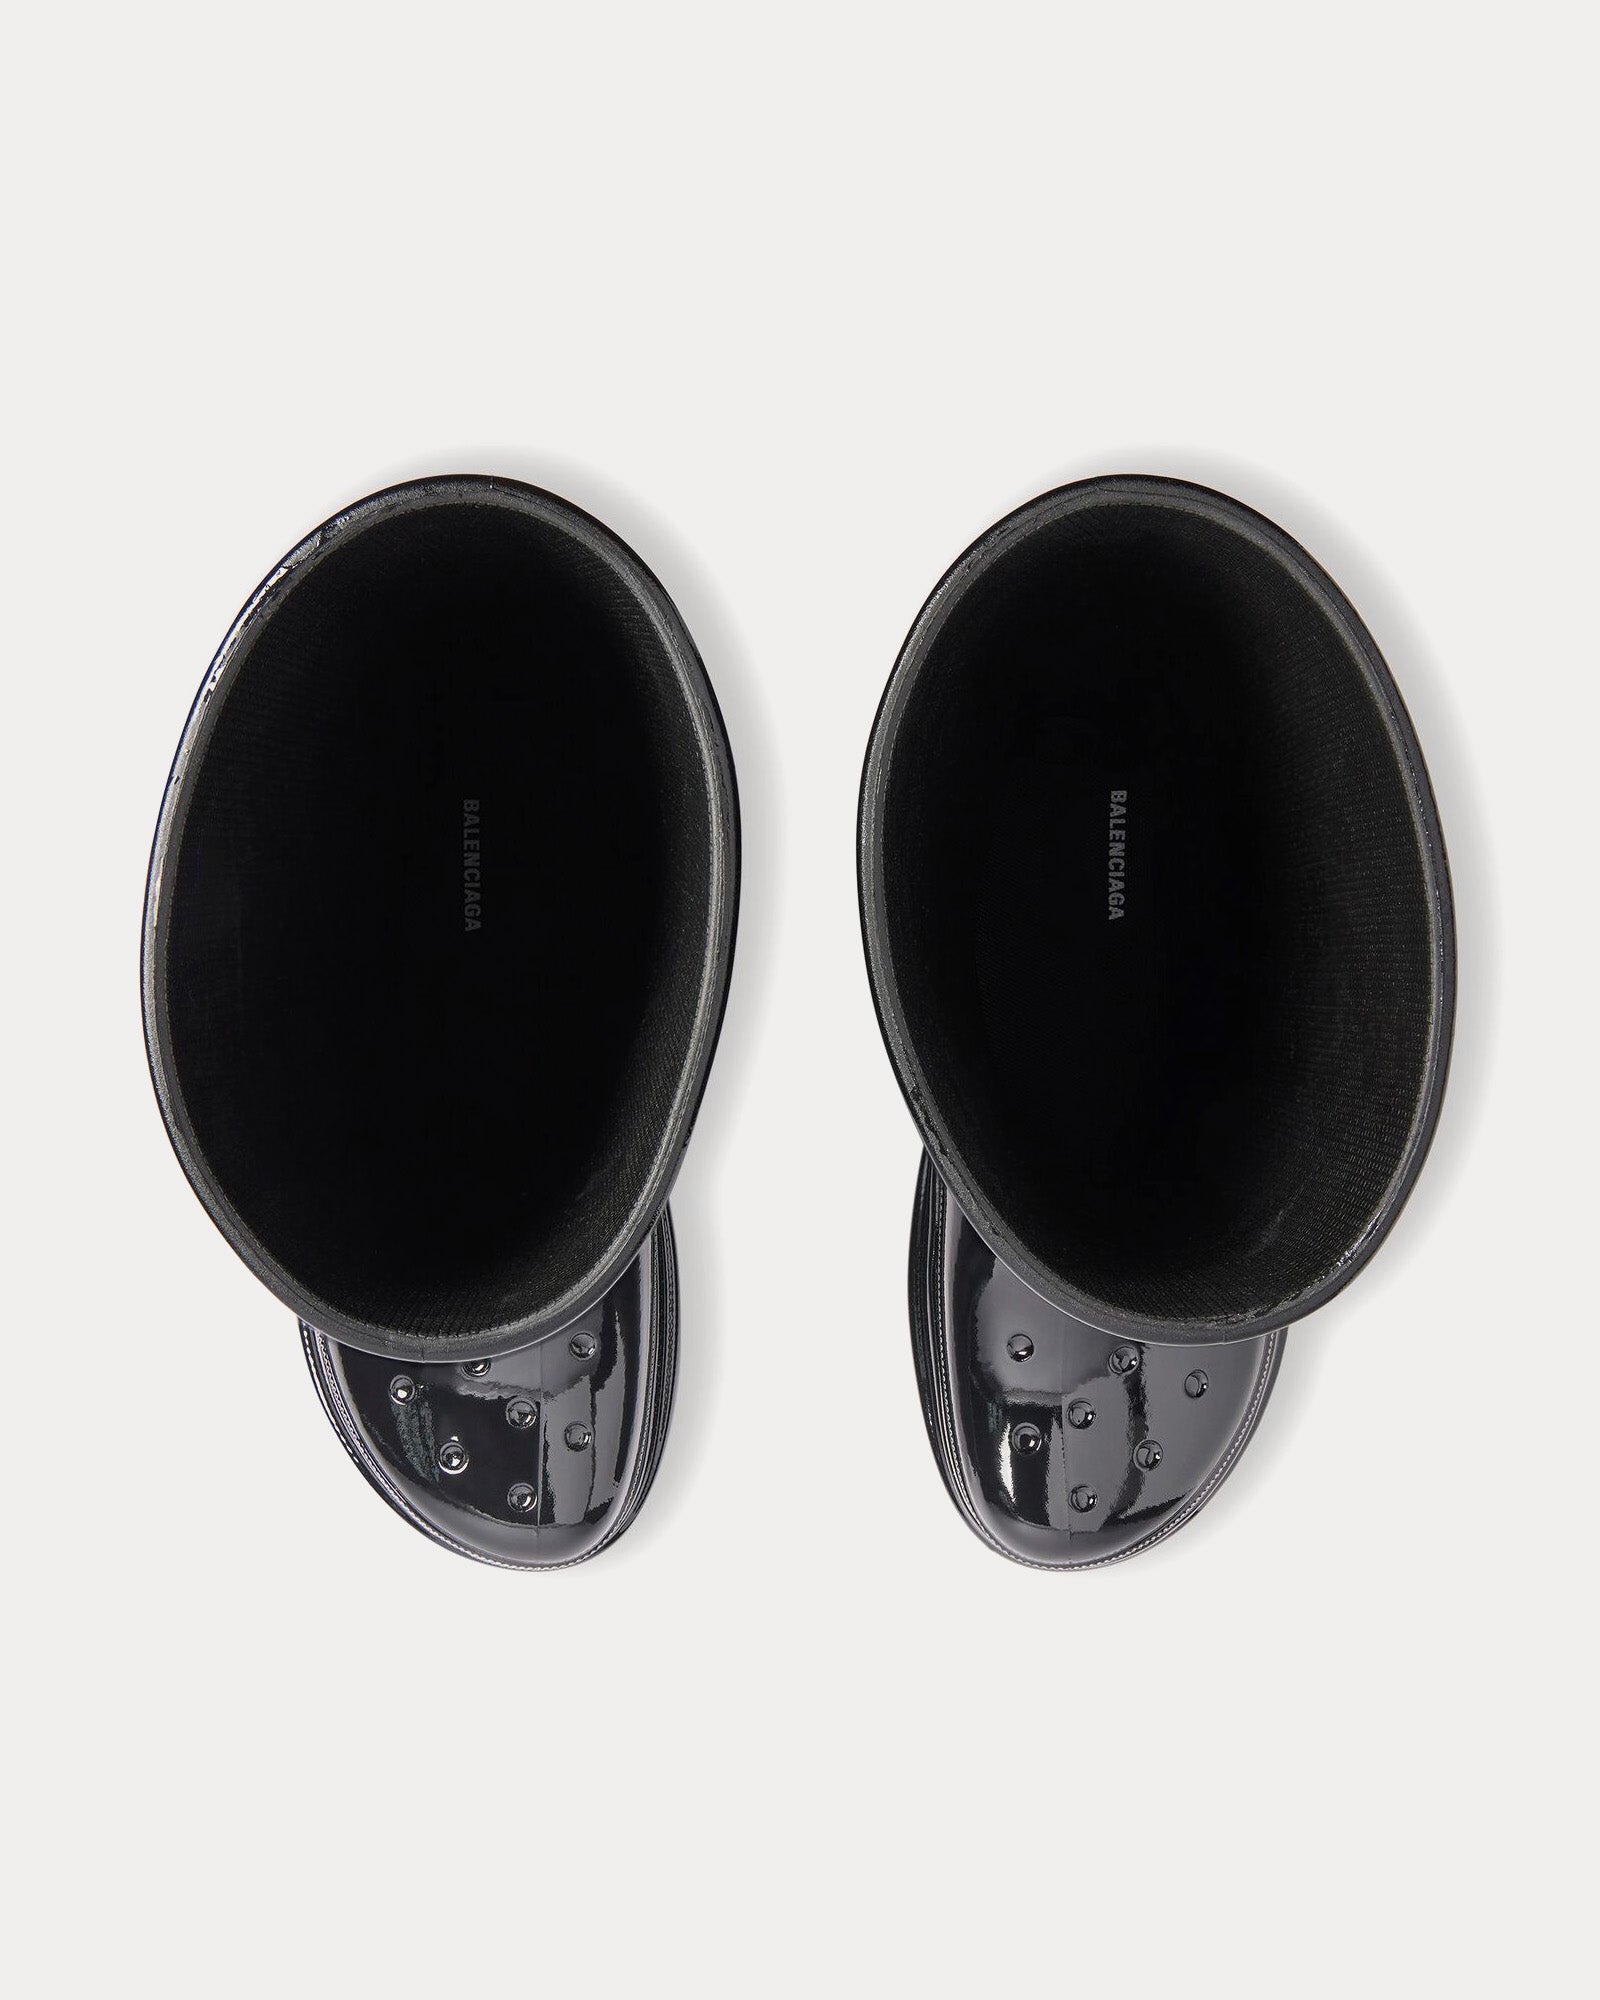 Balenciaga x Crocs - Patent Rubber Black Boots